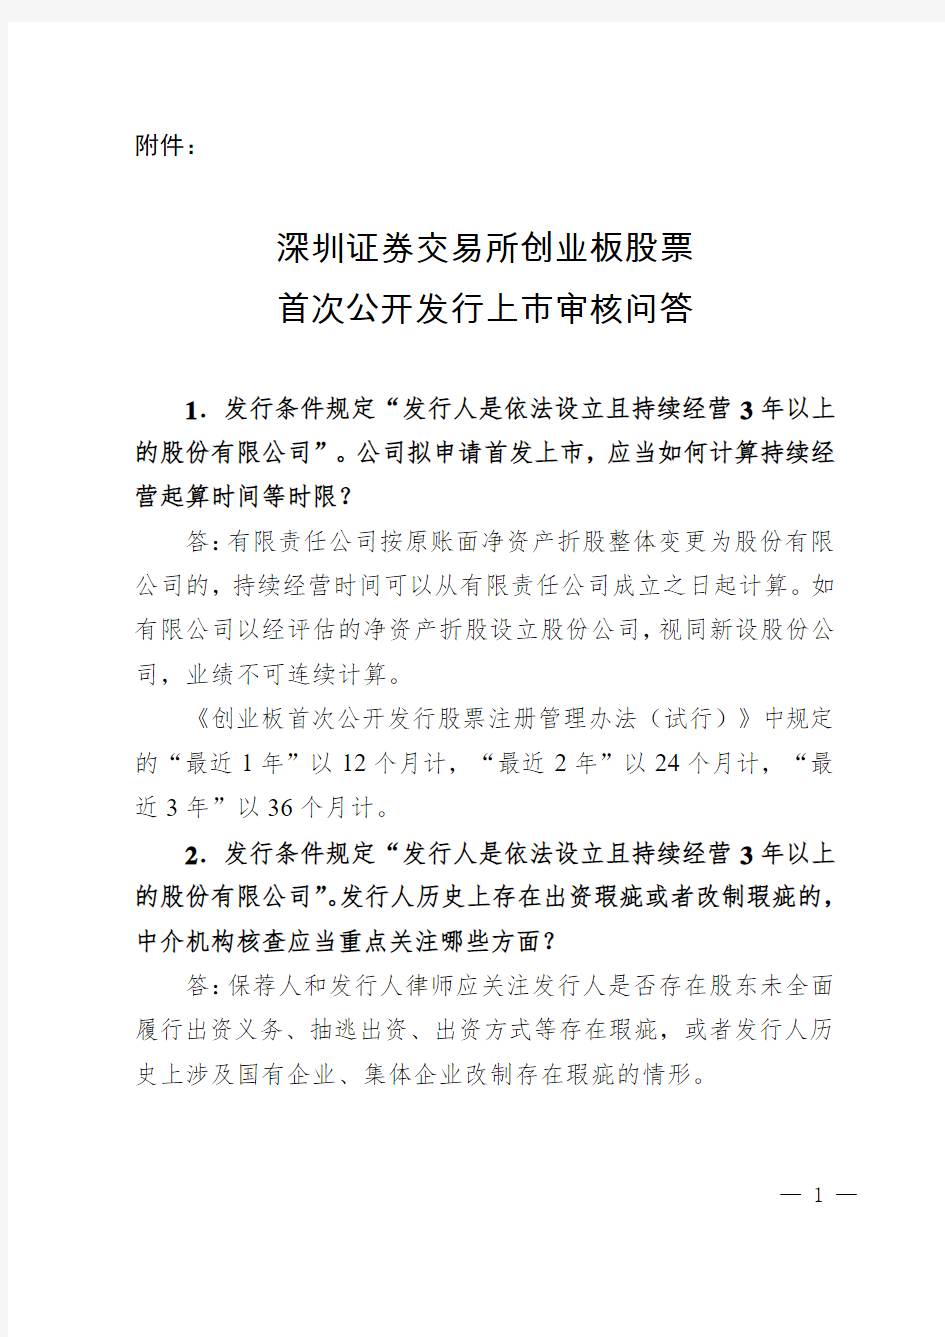 《深圳证券交易所创业板股票首次公开发行上市审核问答》